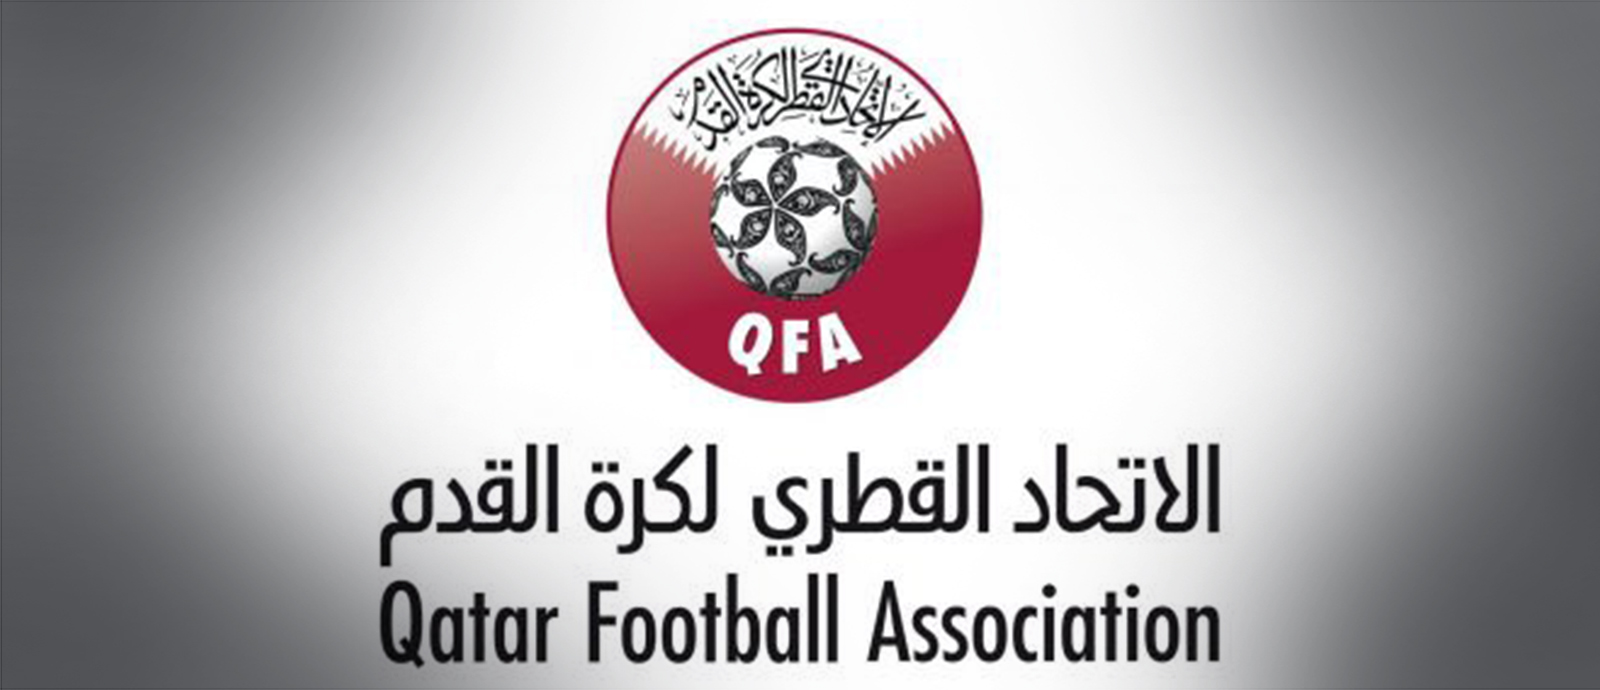 شعلر الاتحاد القطري لكرة القدم